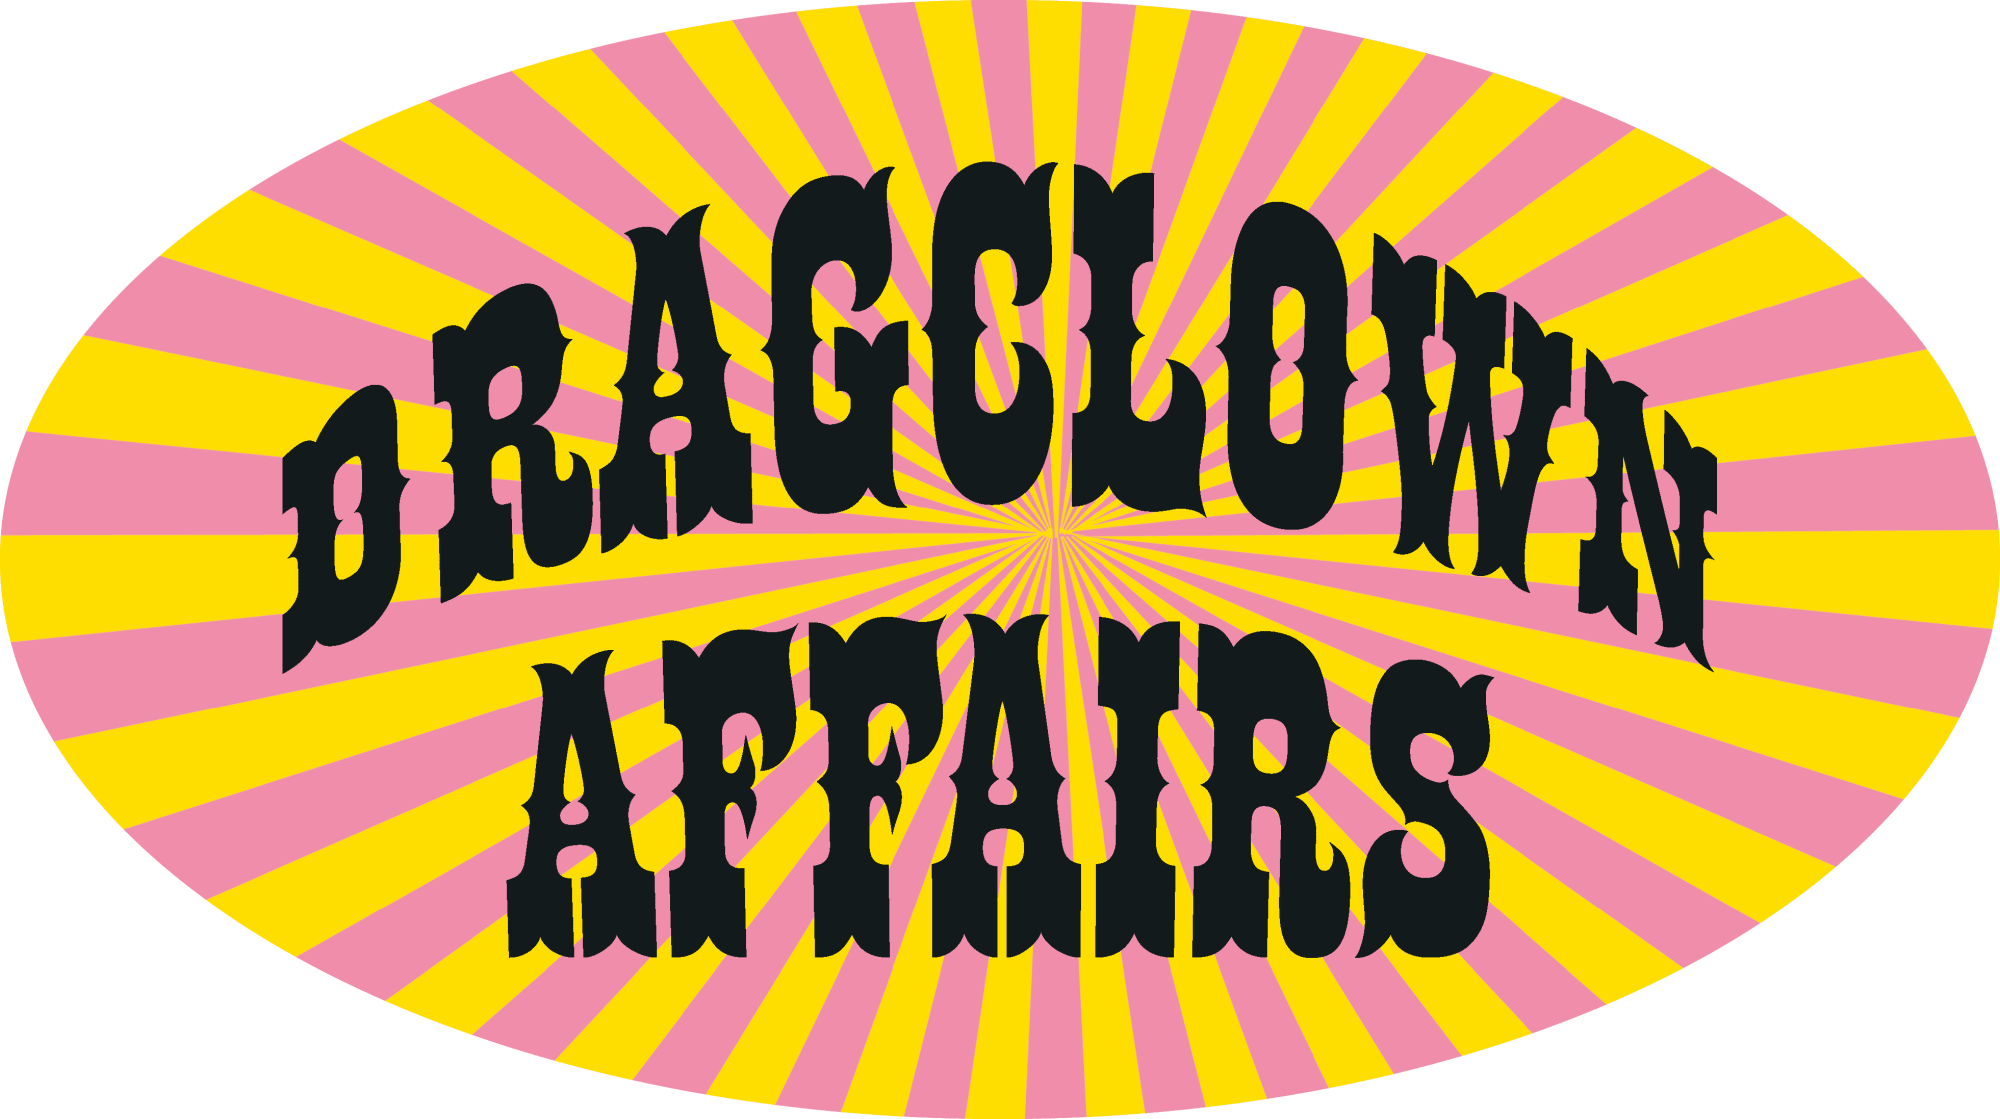 Dragclown affairs